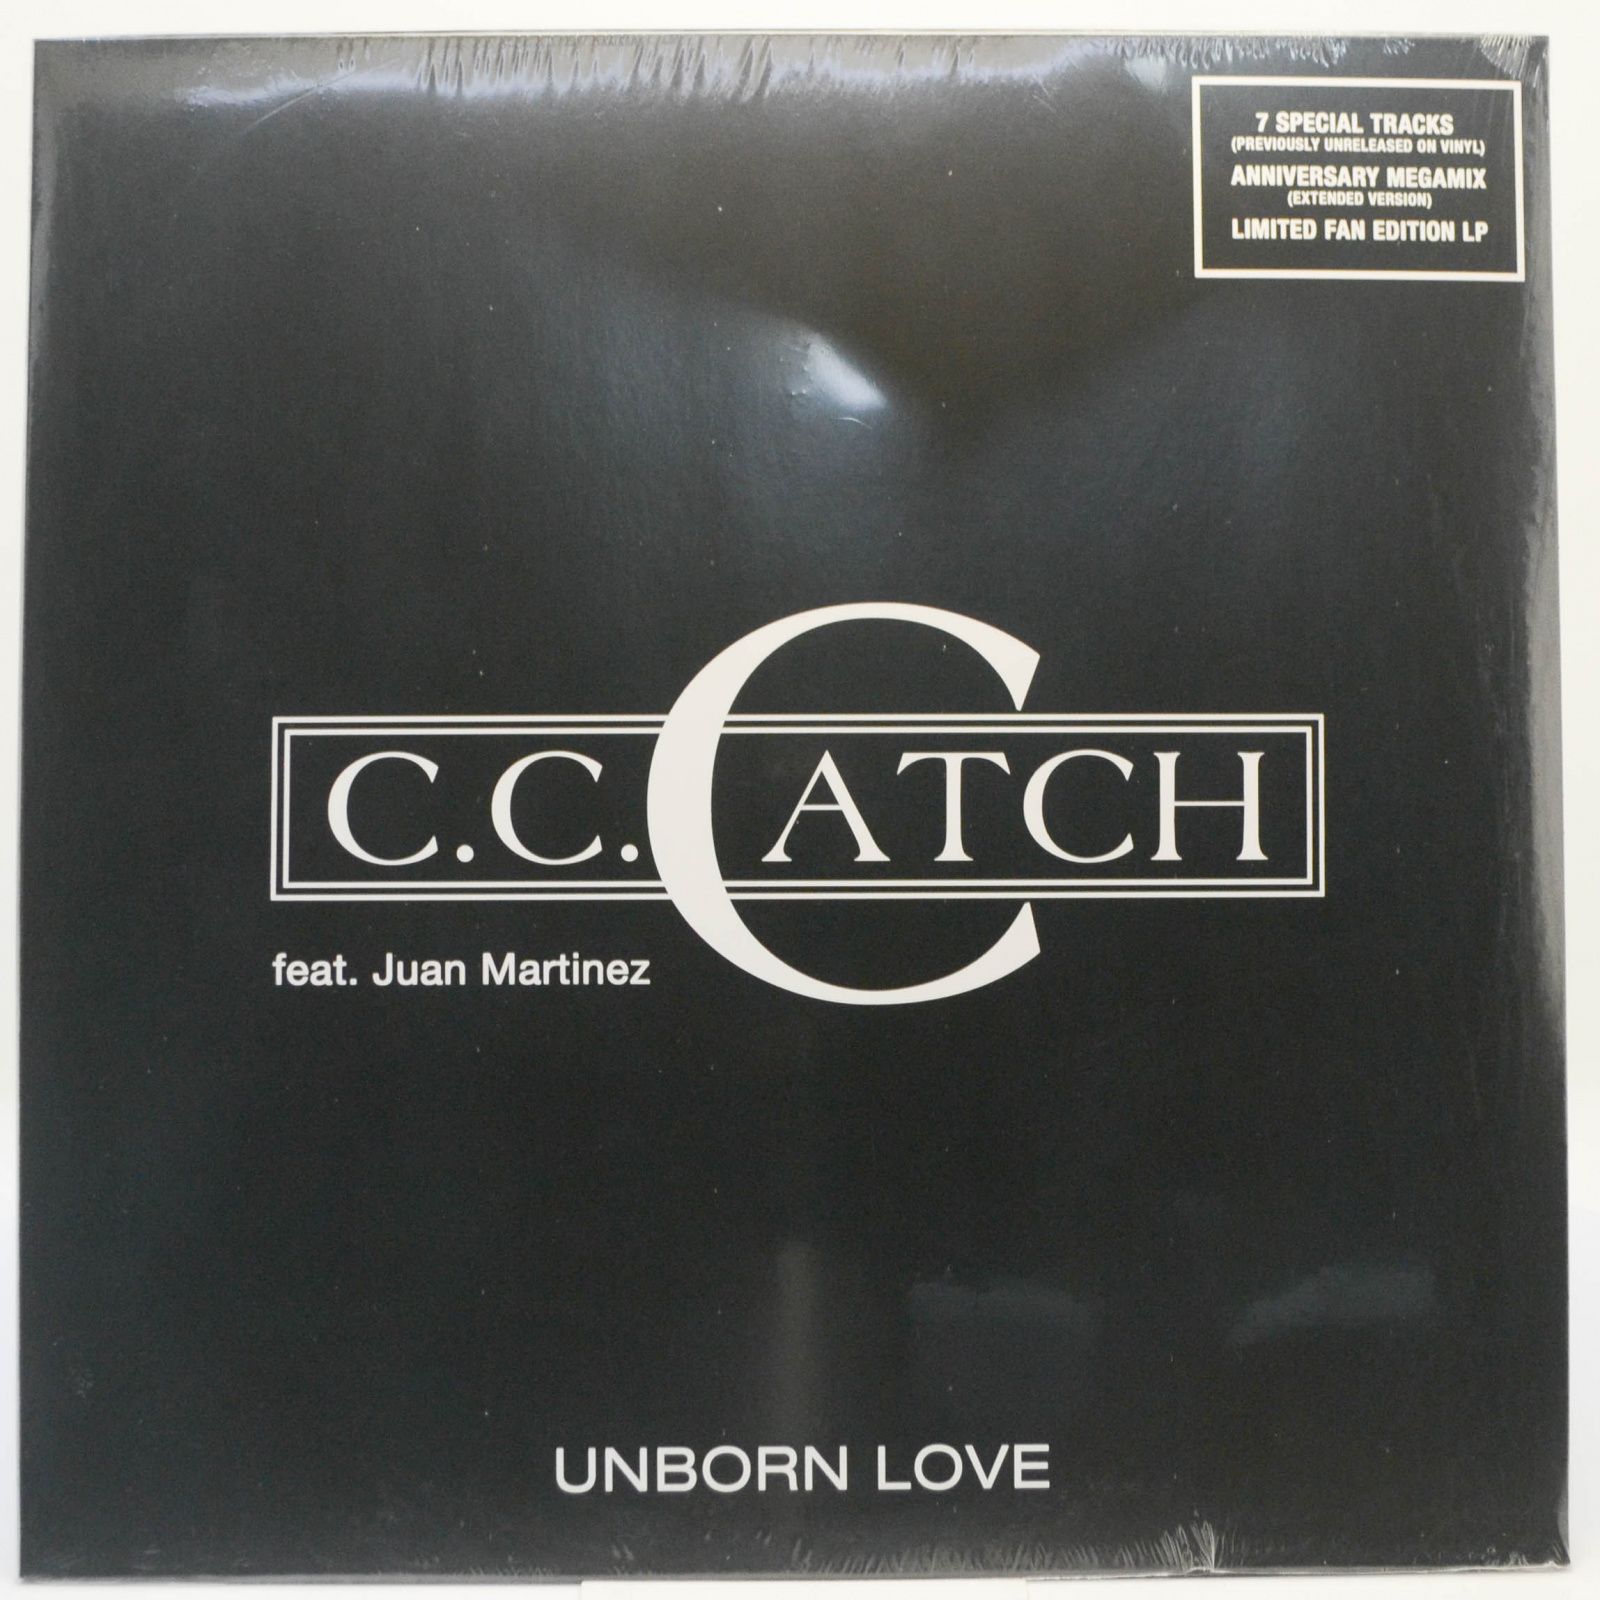 C.C. Catch feat. Juan Martinez